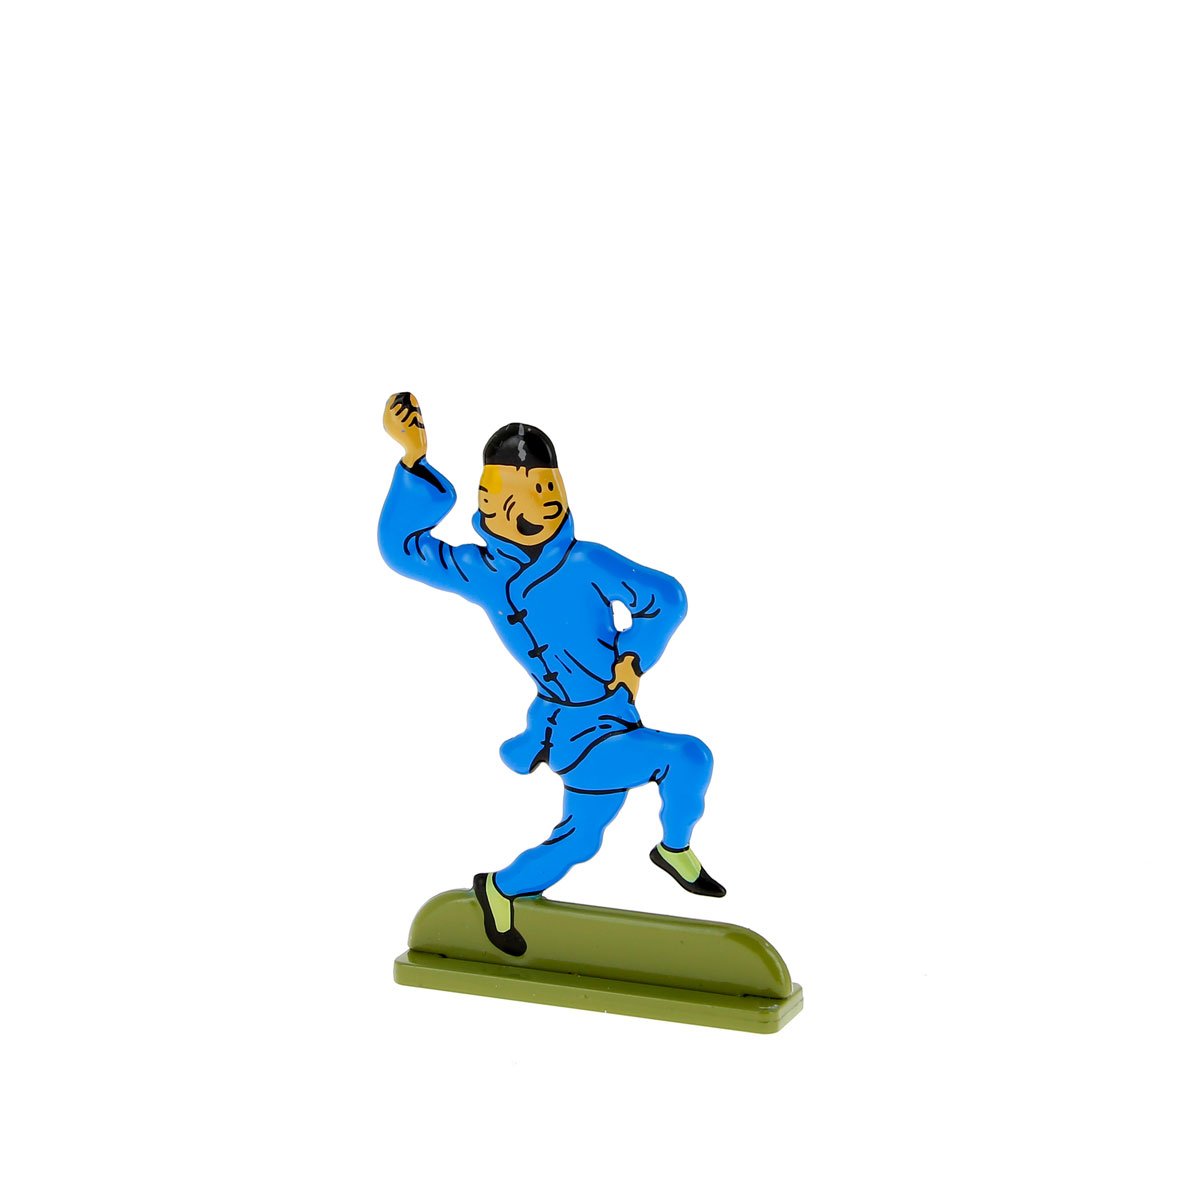 Tintin dancing